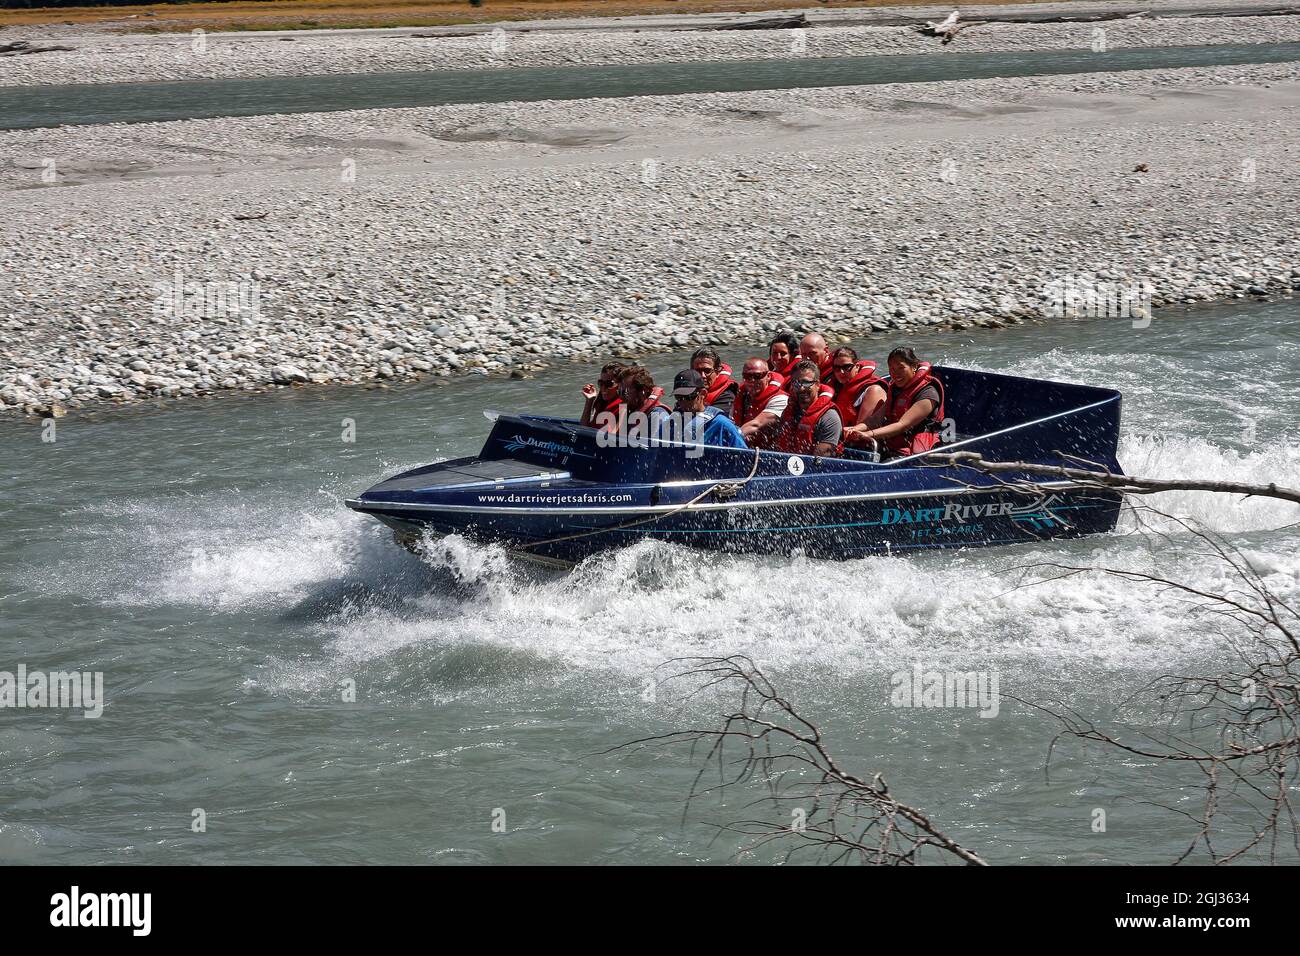 Dart River Kreuzfahrt Jet boat; 10 Personen, tragen PFDs, rote Schwimmwesten, Boot bewegen, Wasserspritzer, Spaß, aufregend, Erholung, Glenorchy; Neuseeland Stockfoto